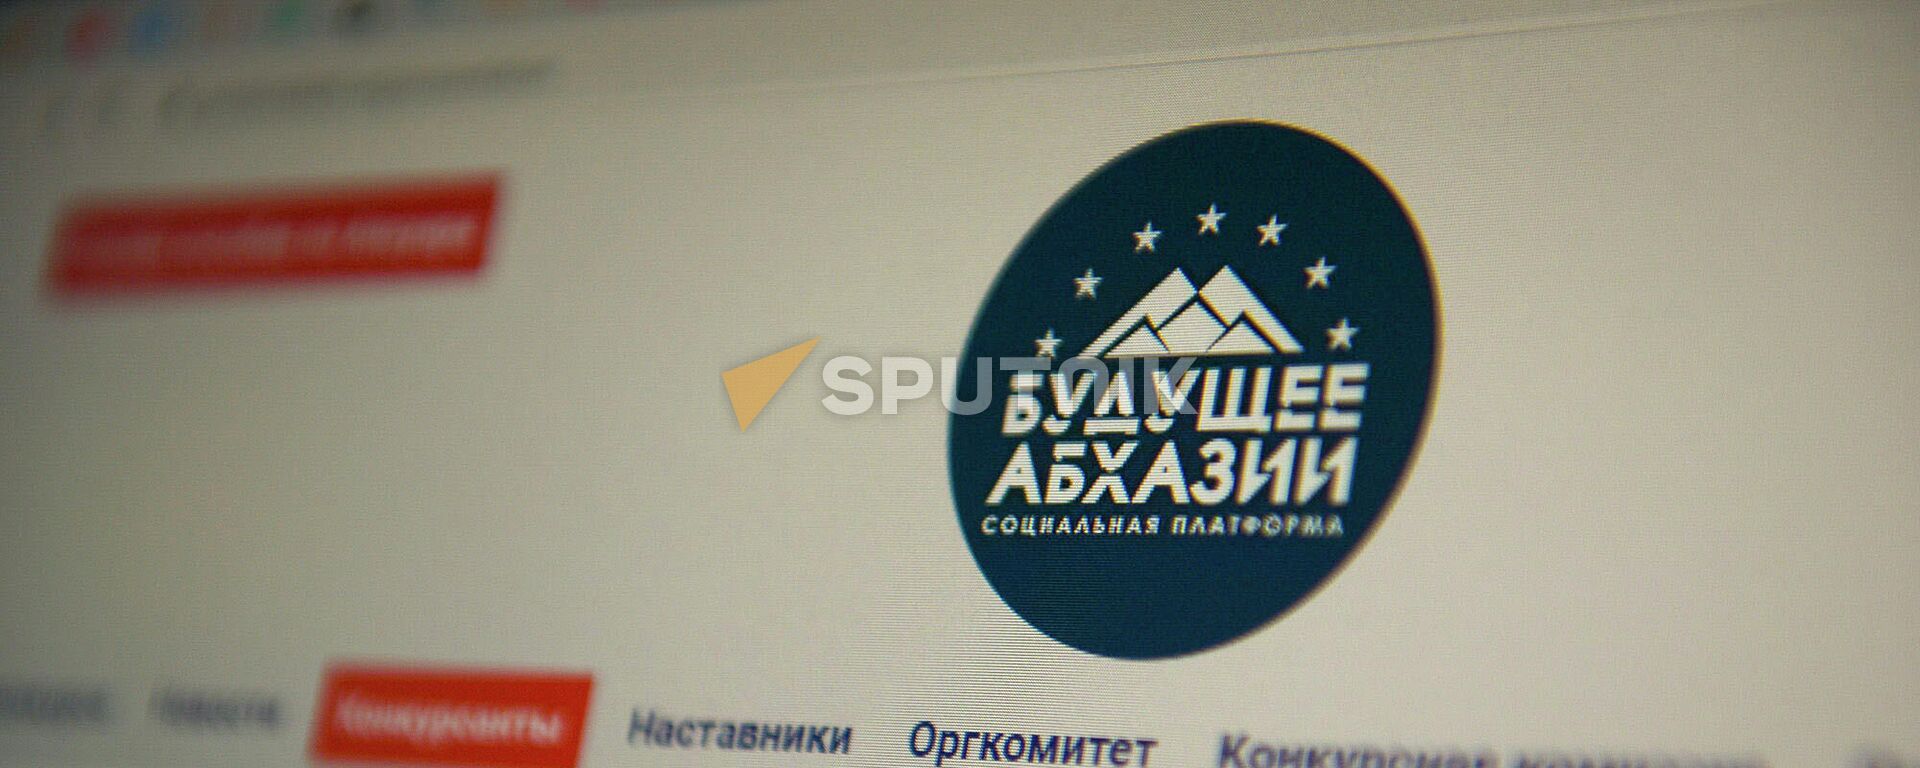 Программа реформ Будущее Абхазии была разработана финалистами конкурса Гордость Абхазии - Sputnik Абхазия, 1920, 28.05.2021